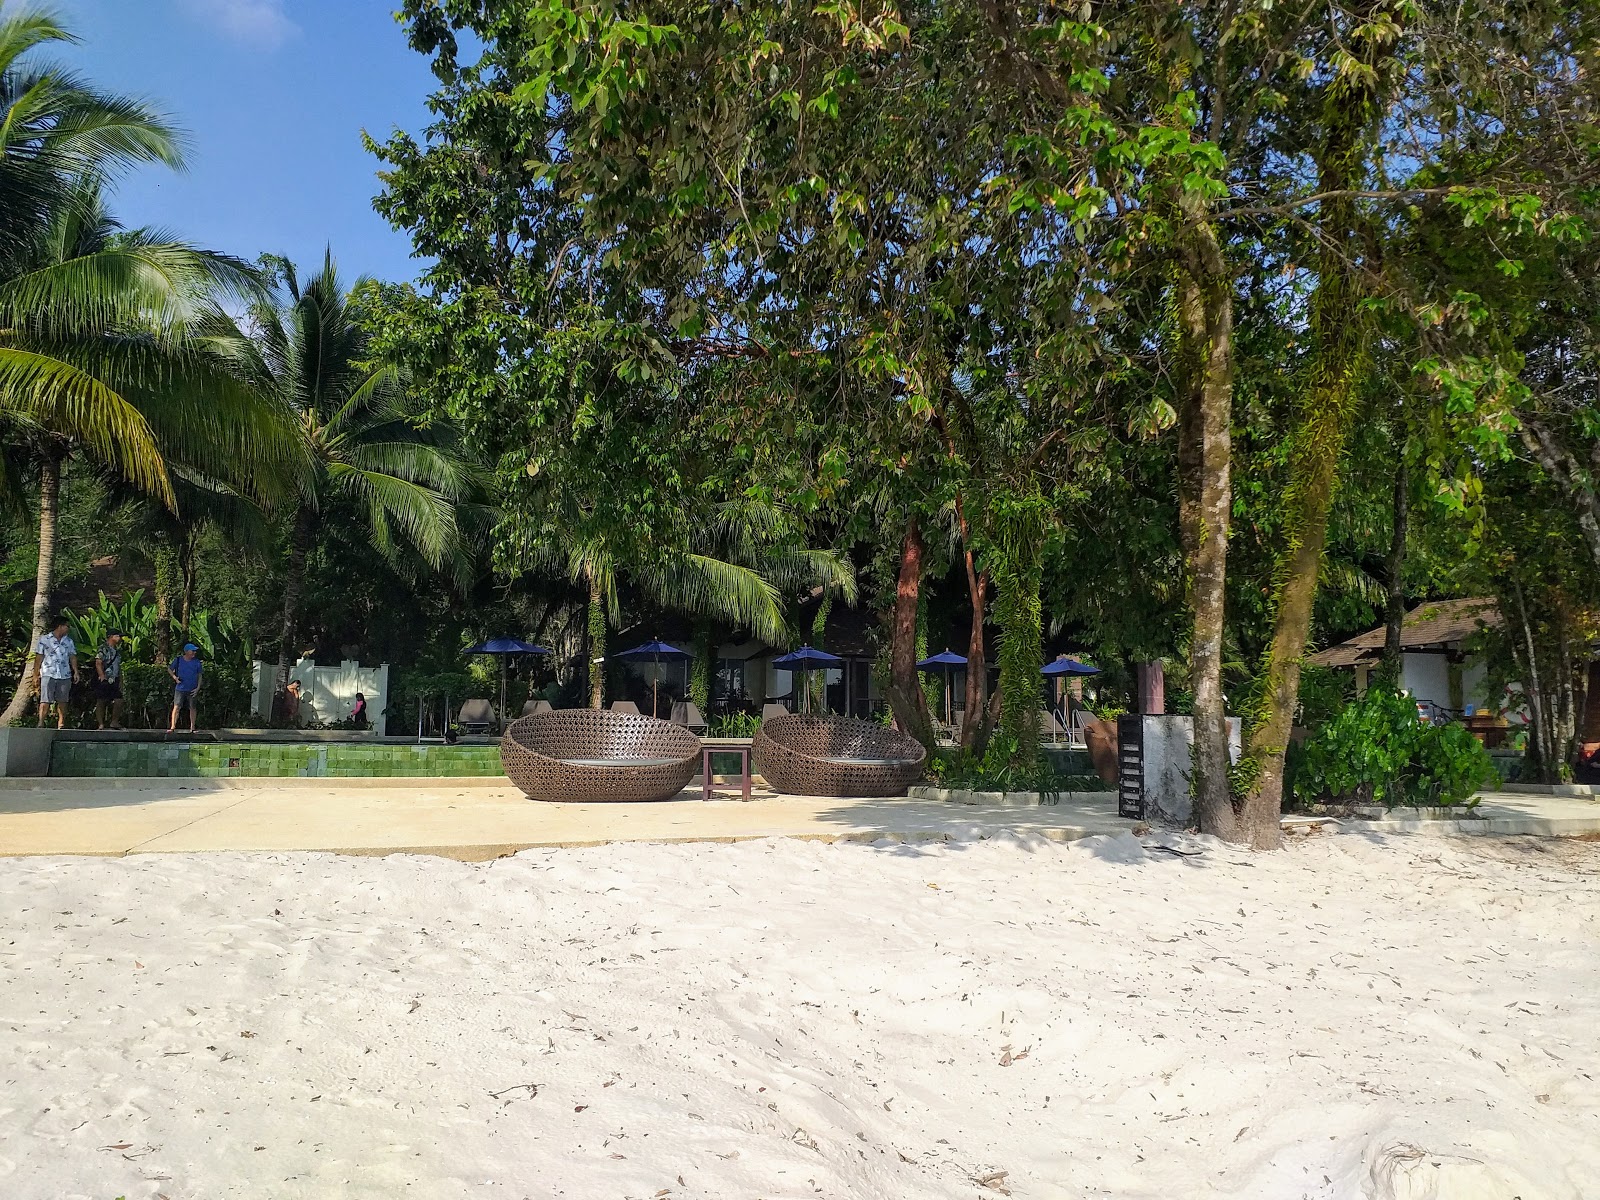 Foto de Centara Chaan Talay Beach - lugar popular entre os apreciadores de relaxamento